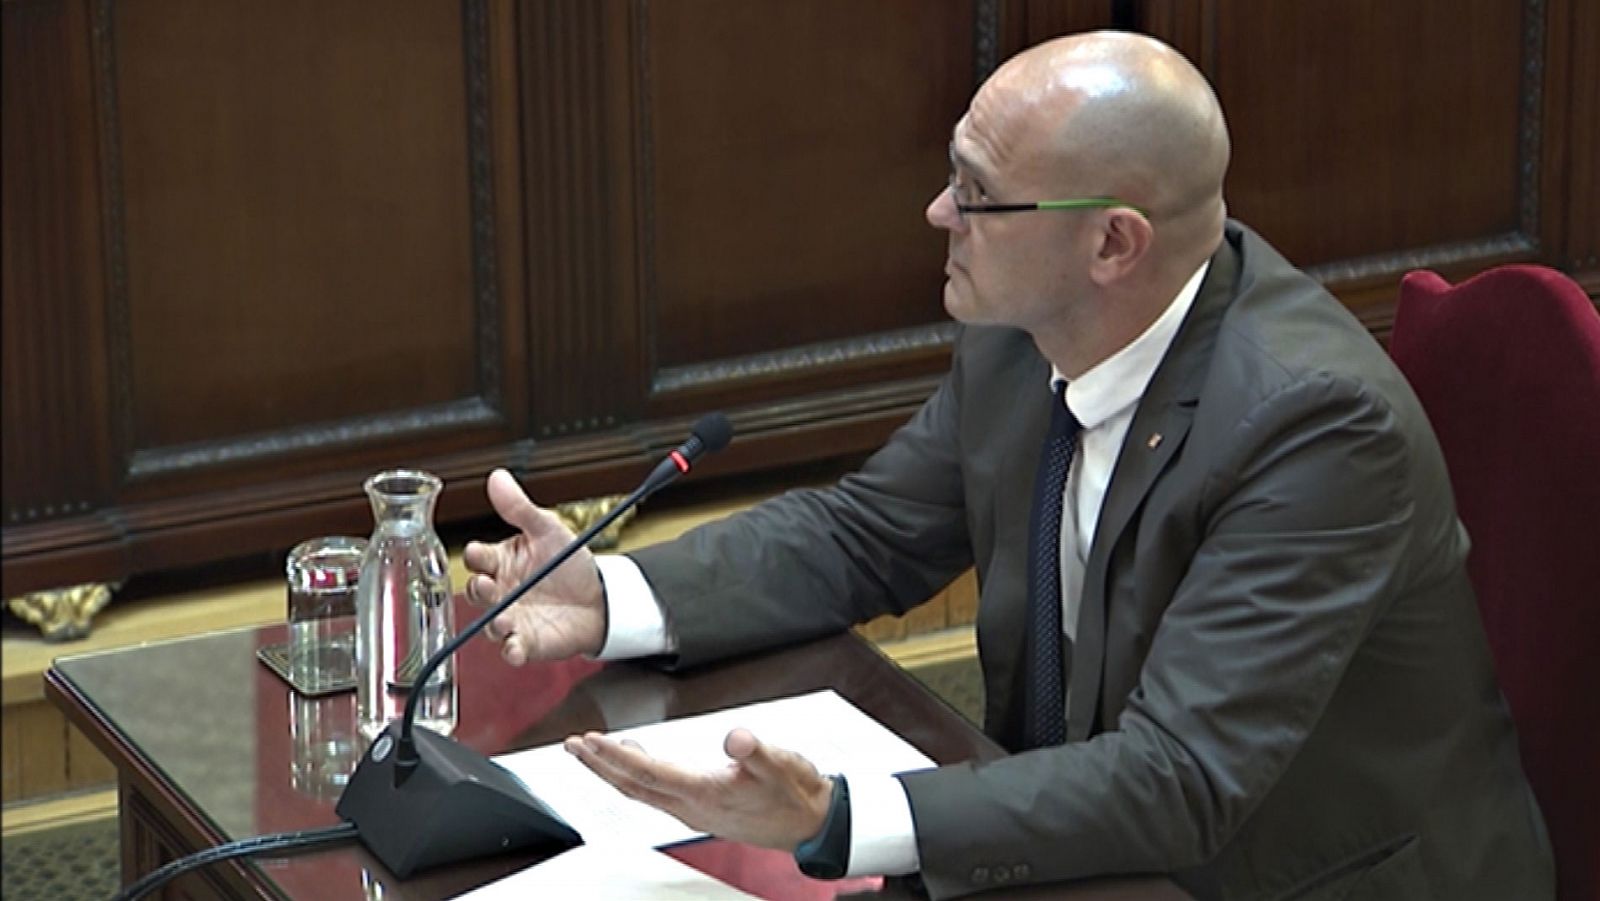 Juicio procés - Romeva señala a los jueces del 'procés' que su sentencia es "una oportunidad" para el diálogo - RTVE.es